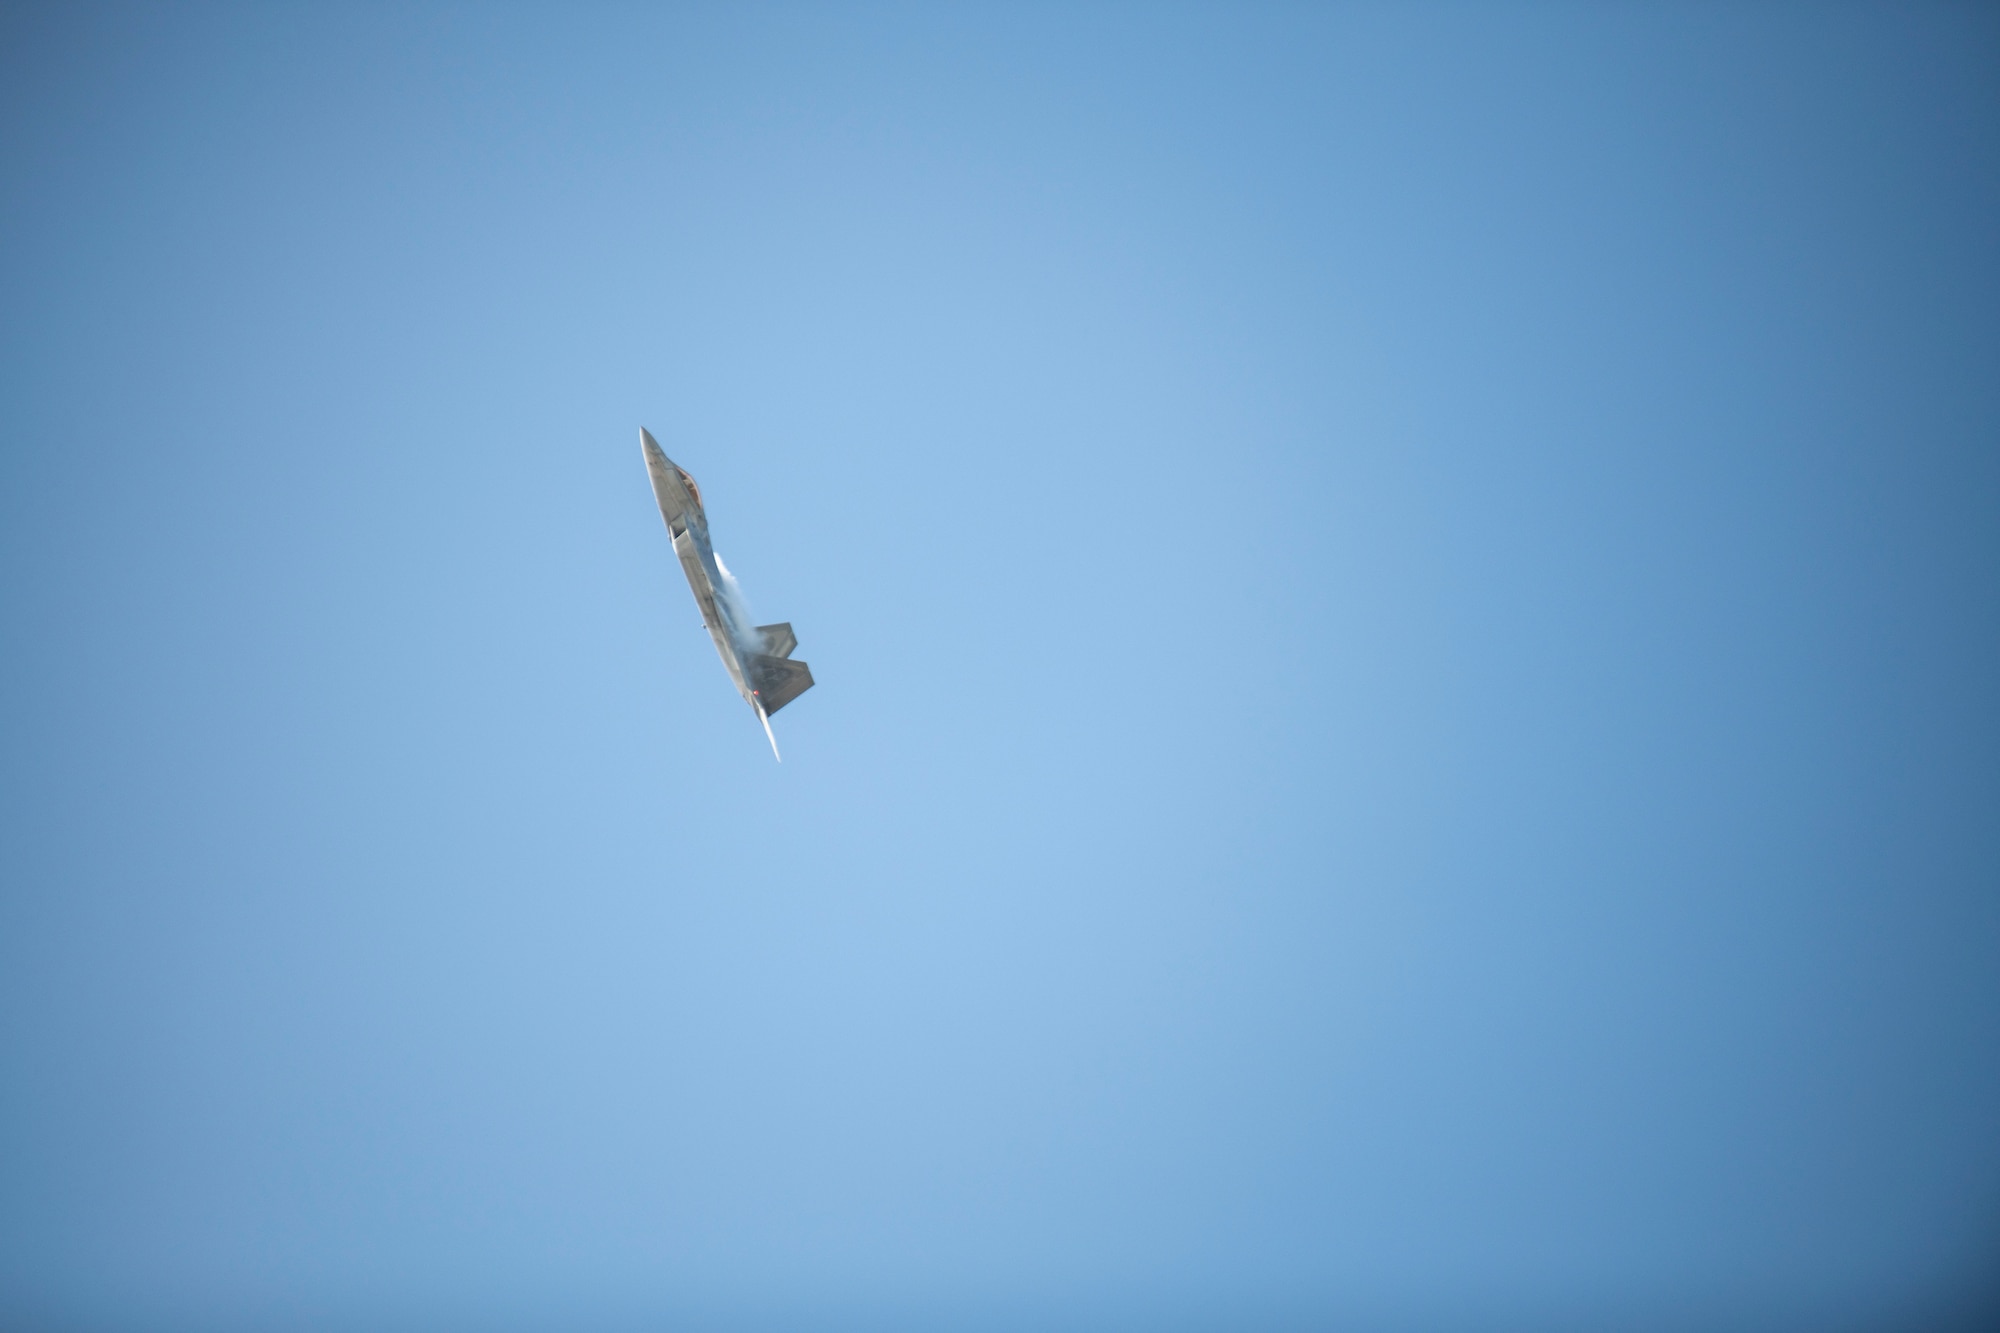 A U.S. Air Force F-22 Raptor flies in the sky